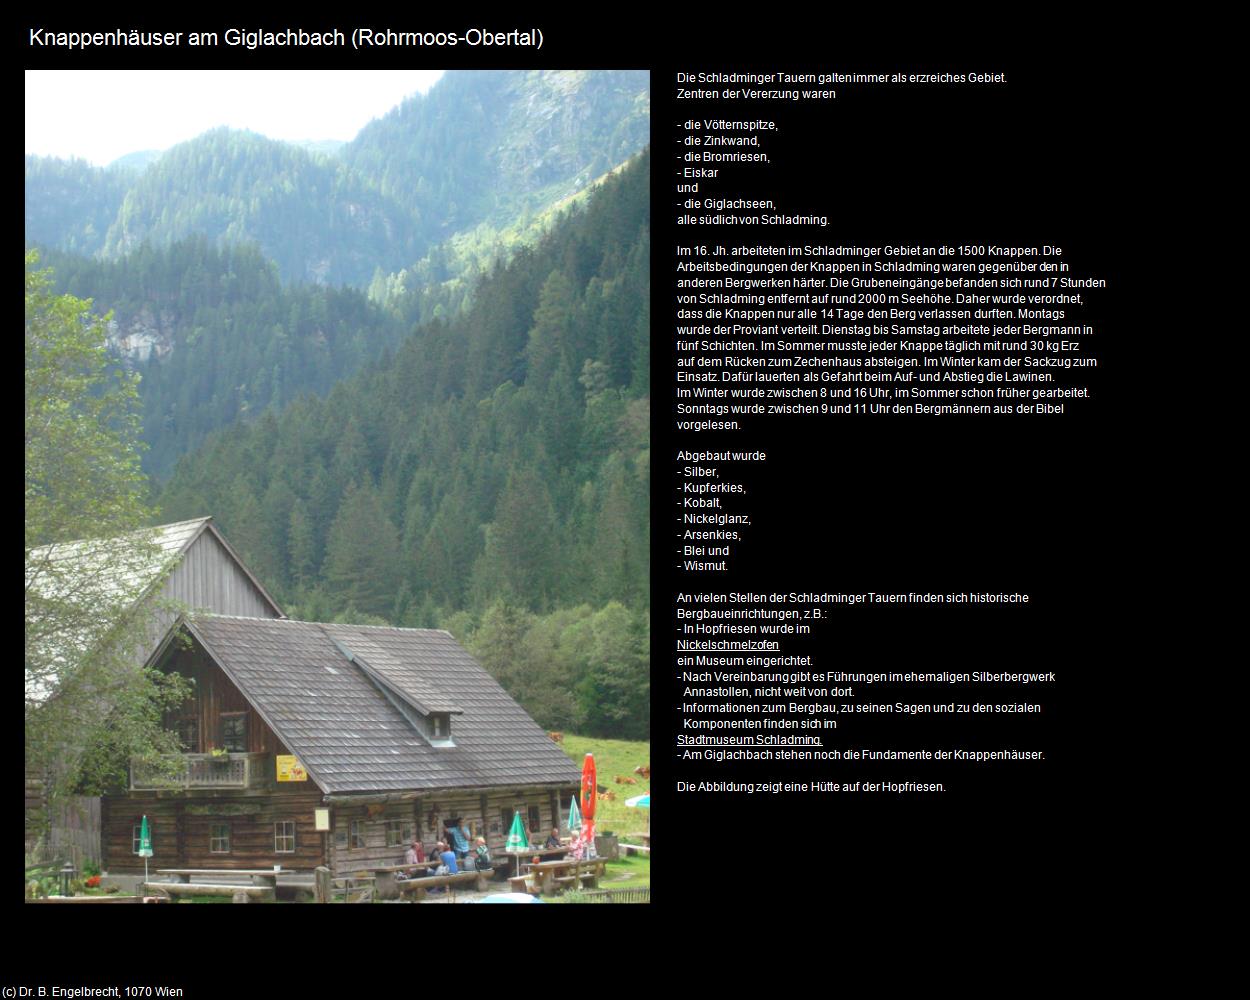 Knappenhäuser am Giglachbach (Obertal) (Rohrmoos) in Kulturatlas-STEIERMARK(c)B.Engelbrecht